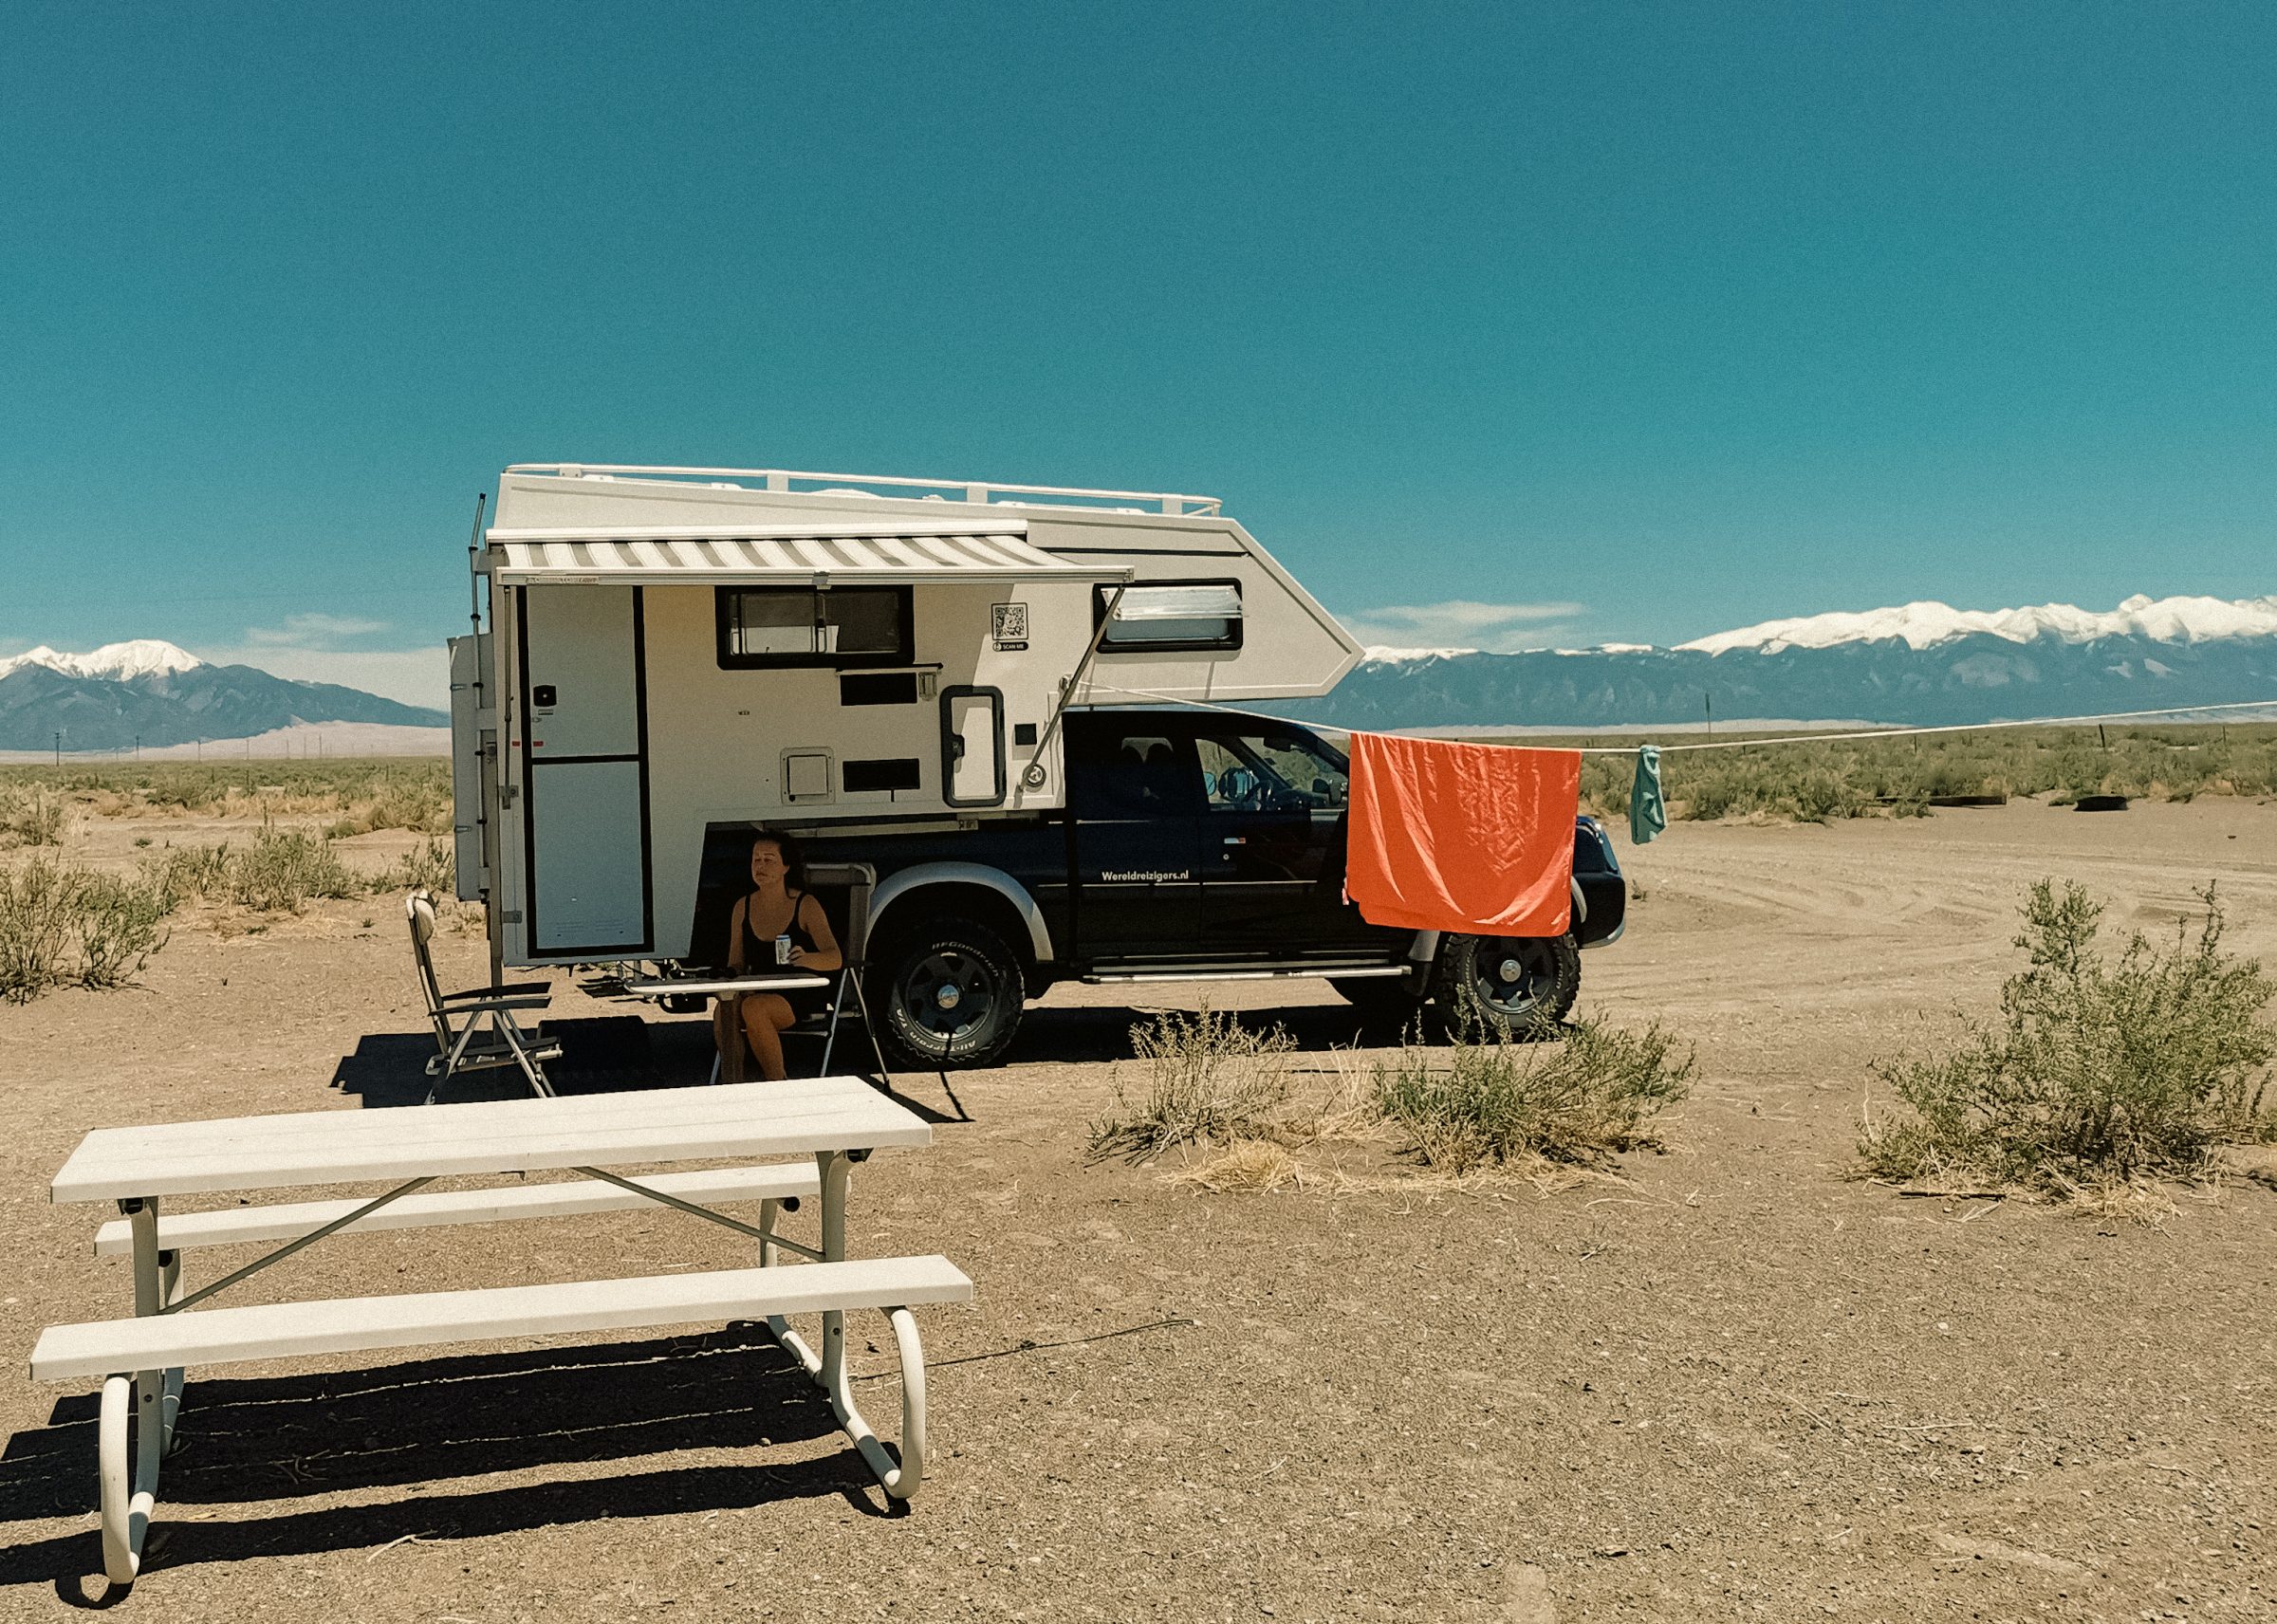 De 25 dollar per nacht 'dry camping' plek van Sand Dunes Recreation, met de Great Sand Dunes in de achtergrond.